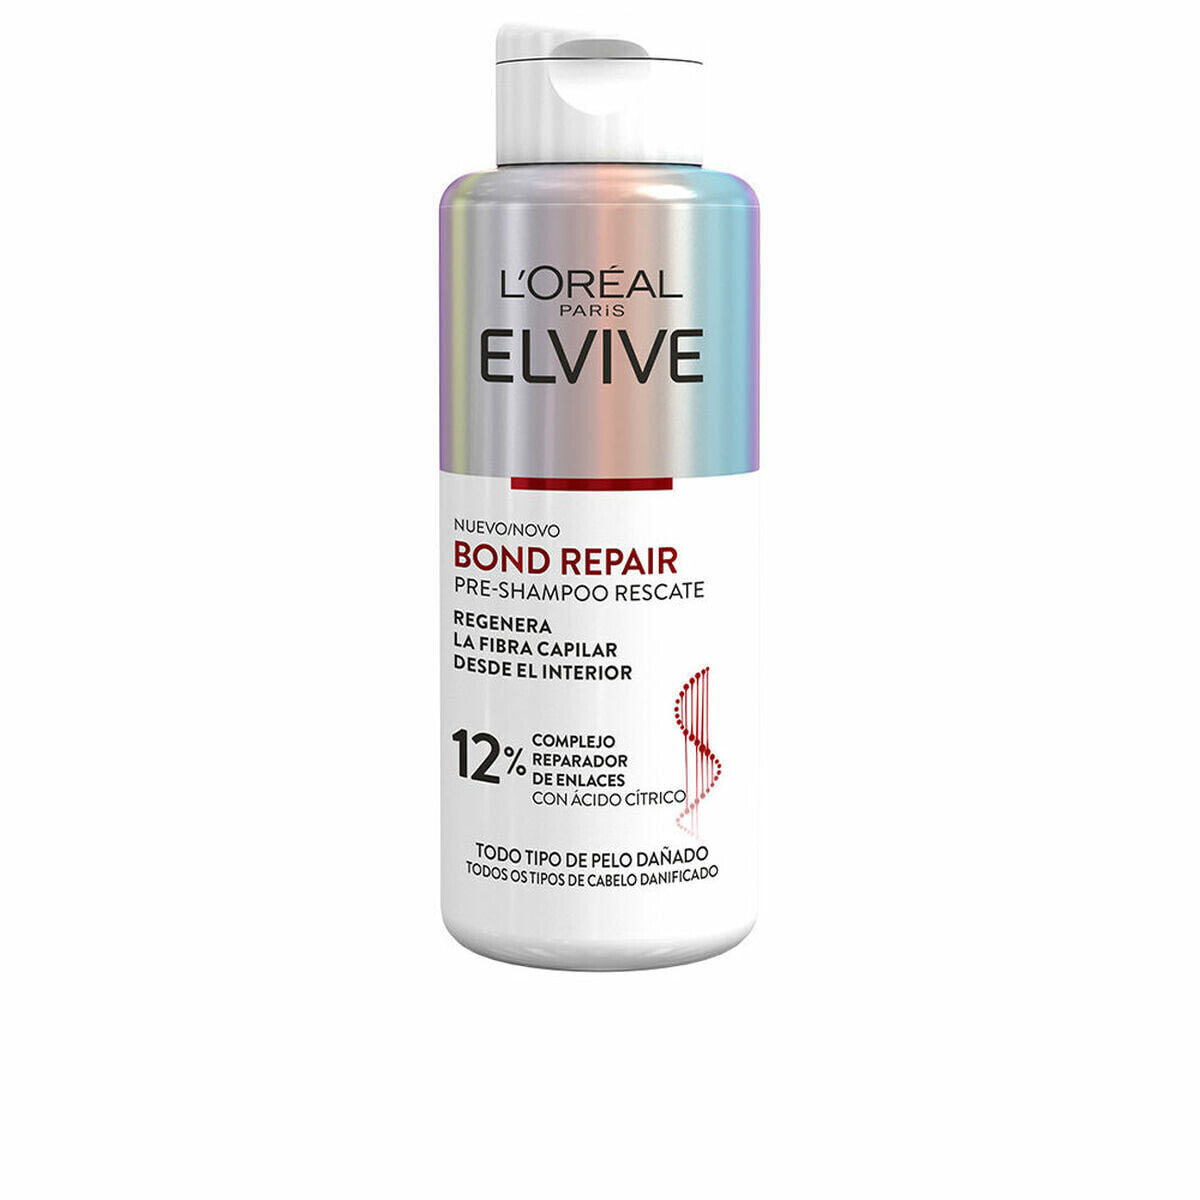 Пре-шампунь L'Oreal Make Up Elvive Bond Repair Средство для укрепления волос 200 ml